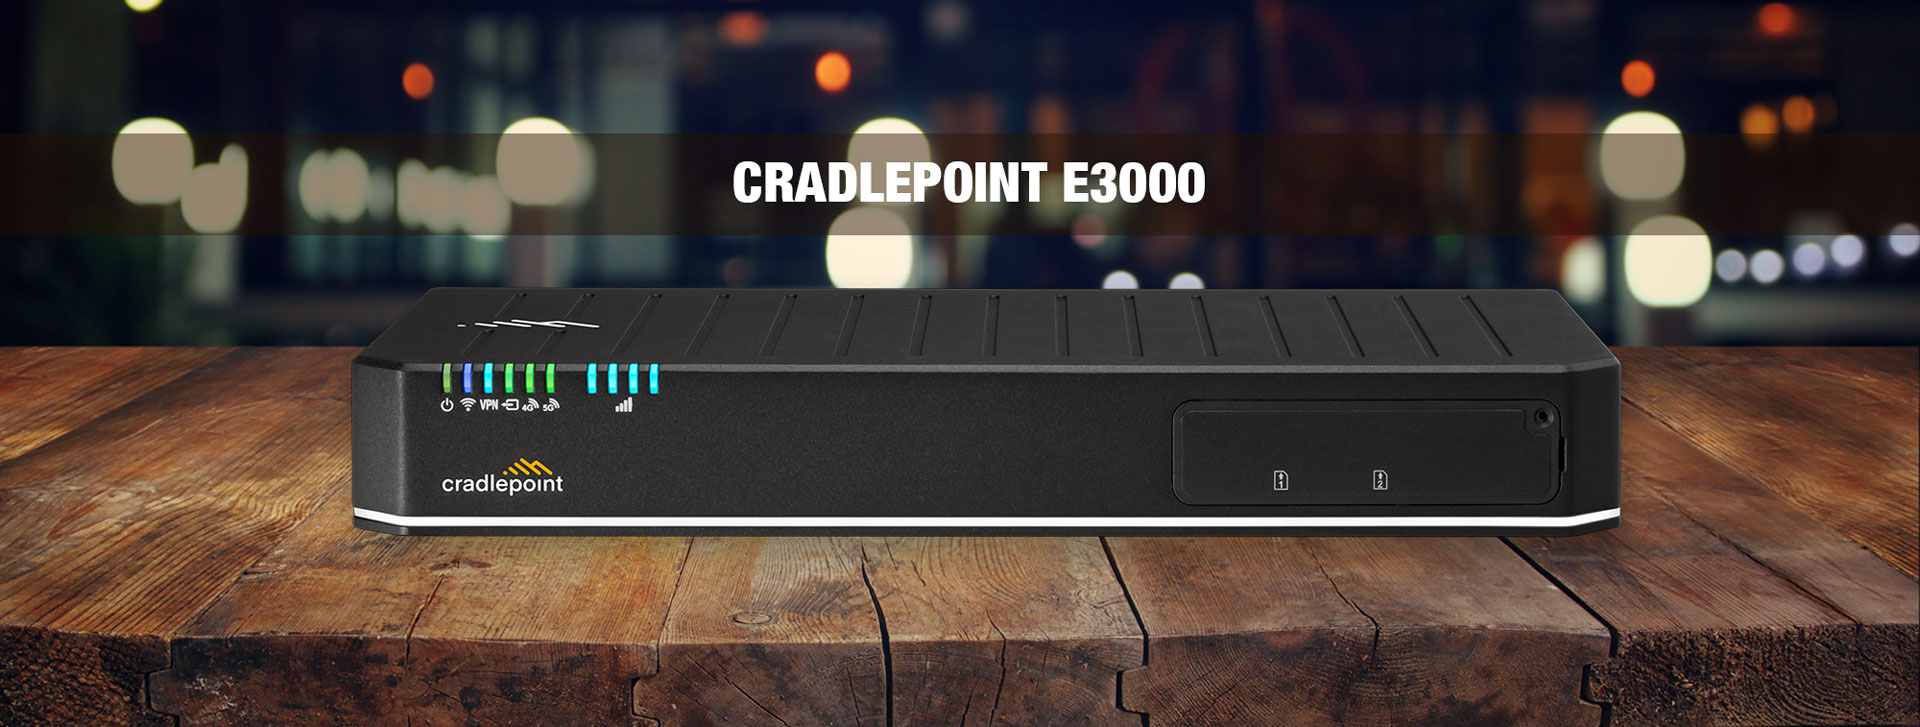 Cradlepoint E3000